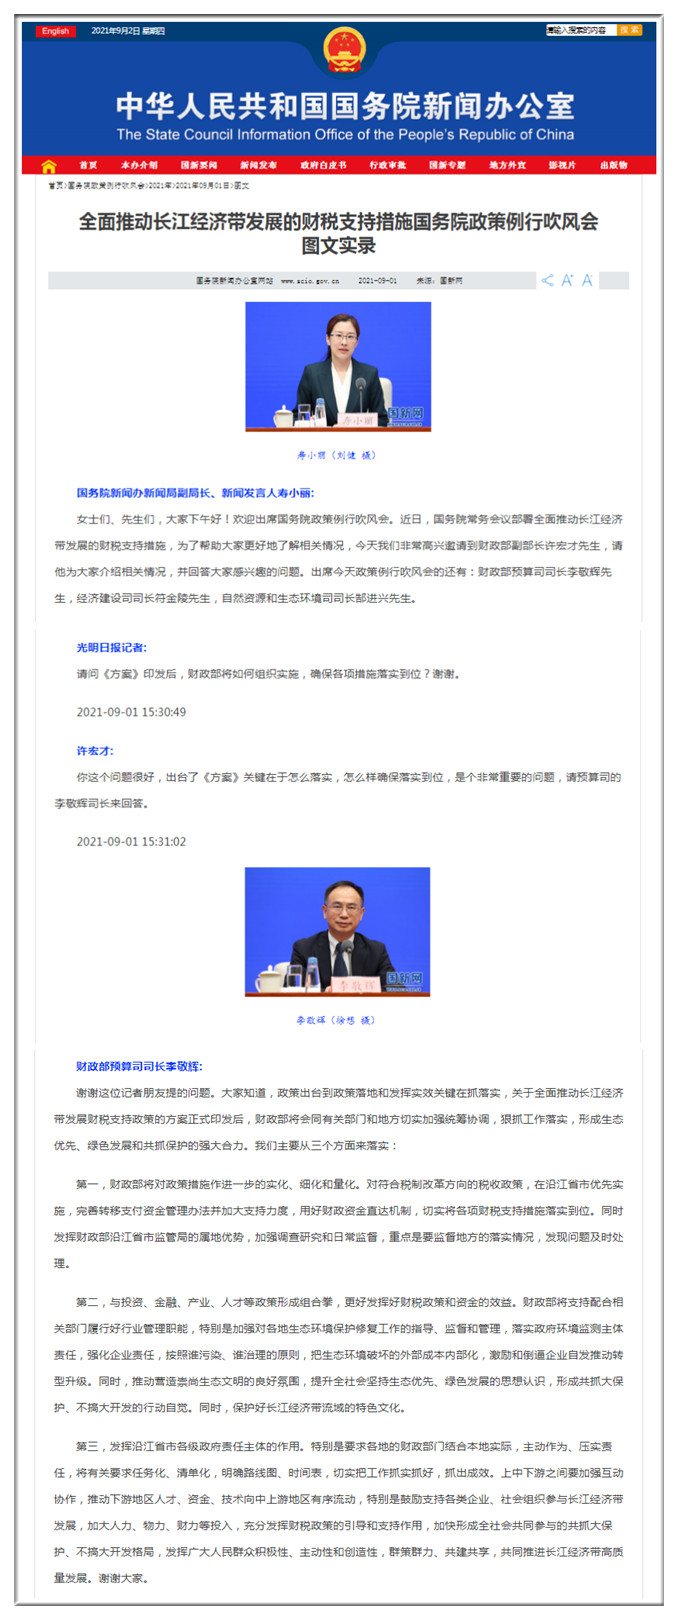 共建长江经济带高质量发展  落实政策措施